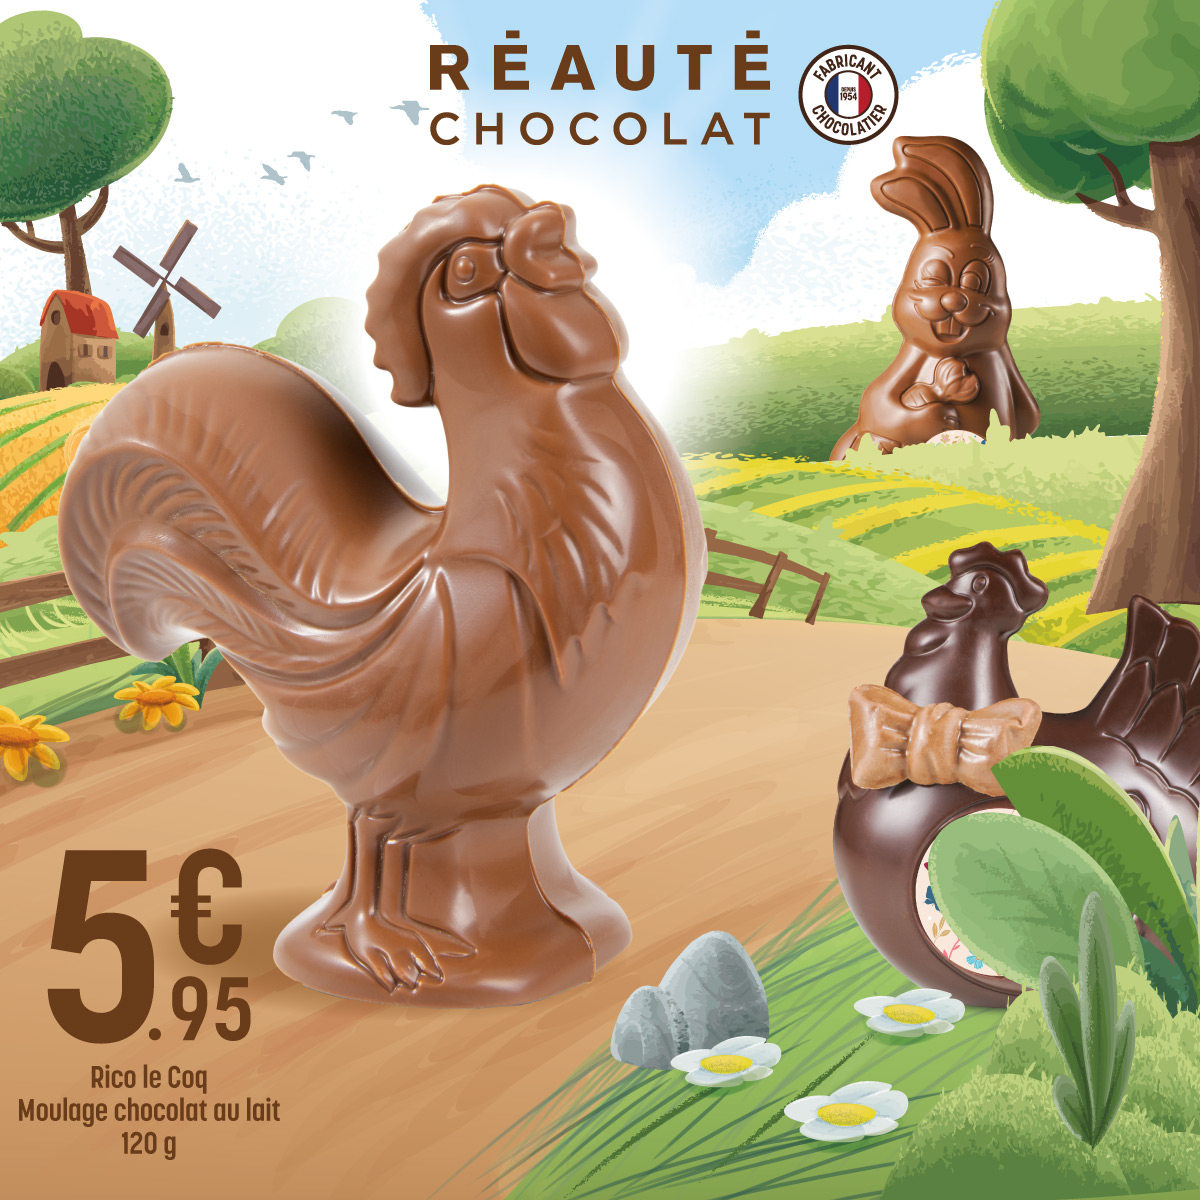 Be Green - Saint Parres - - actu reaute chocolat paques - 1